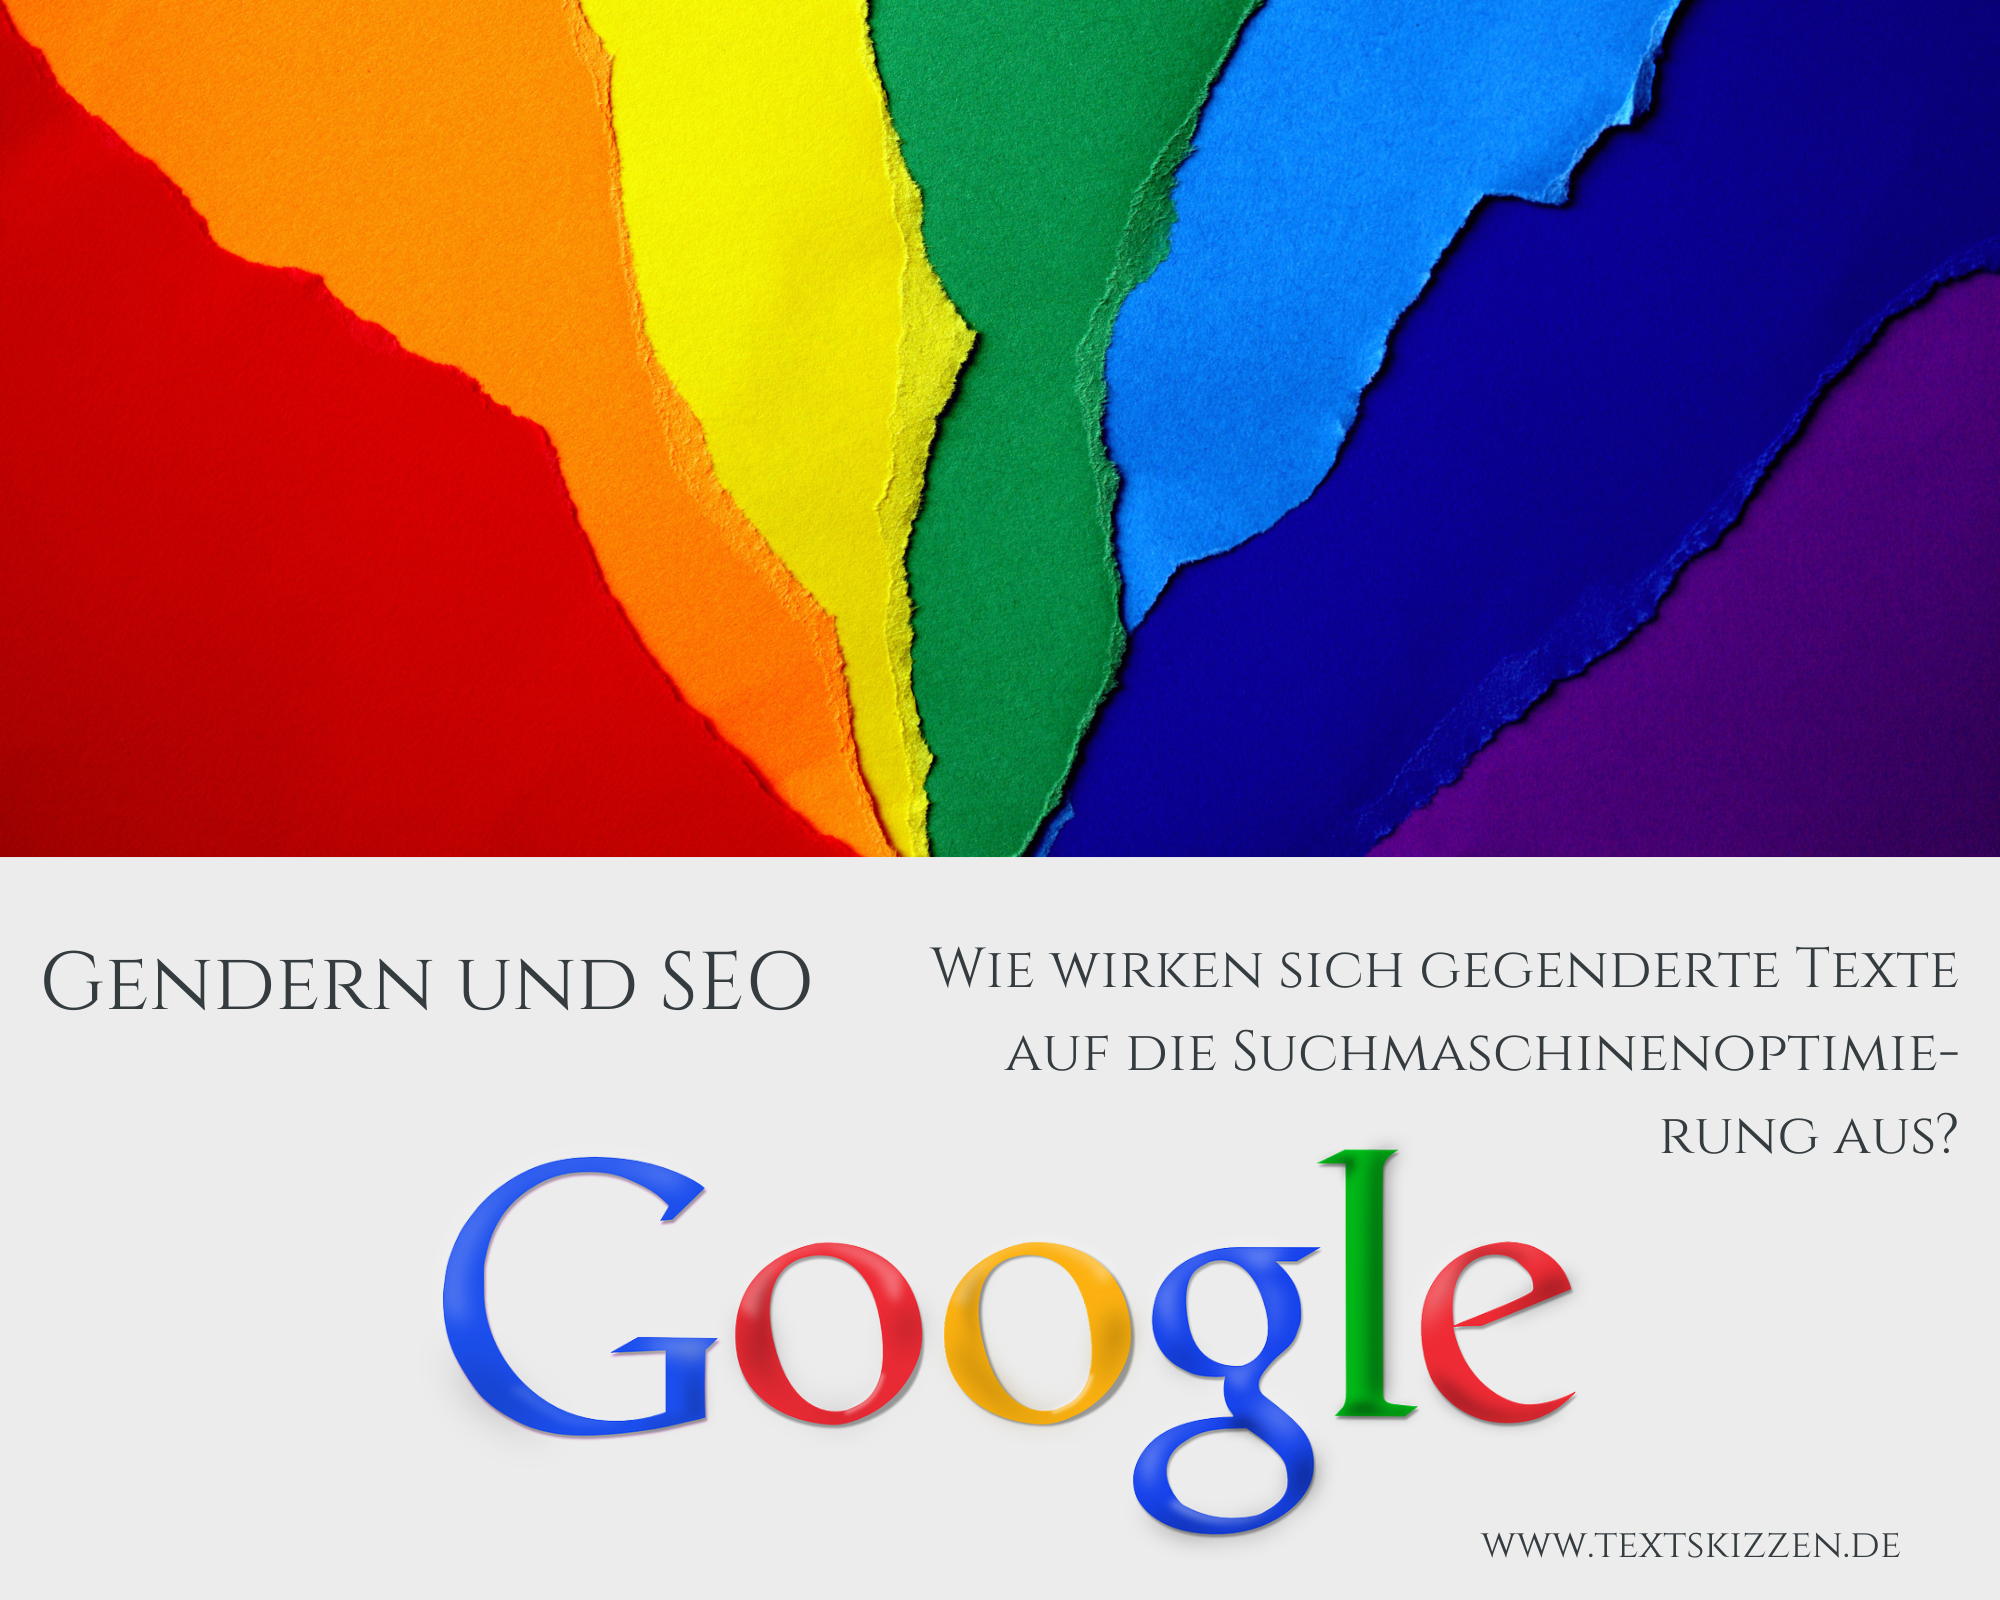 Gendern und SEO: Wie wirken sich gegenderte Texte auf die Suchmaschinenoptimierung aus. Oberhalb des Textes ein Fächer in den Regenbogenfarben, unterhalb des Textes der Schriftzug "Google".